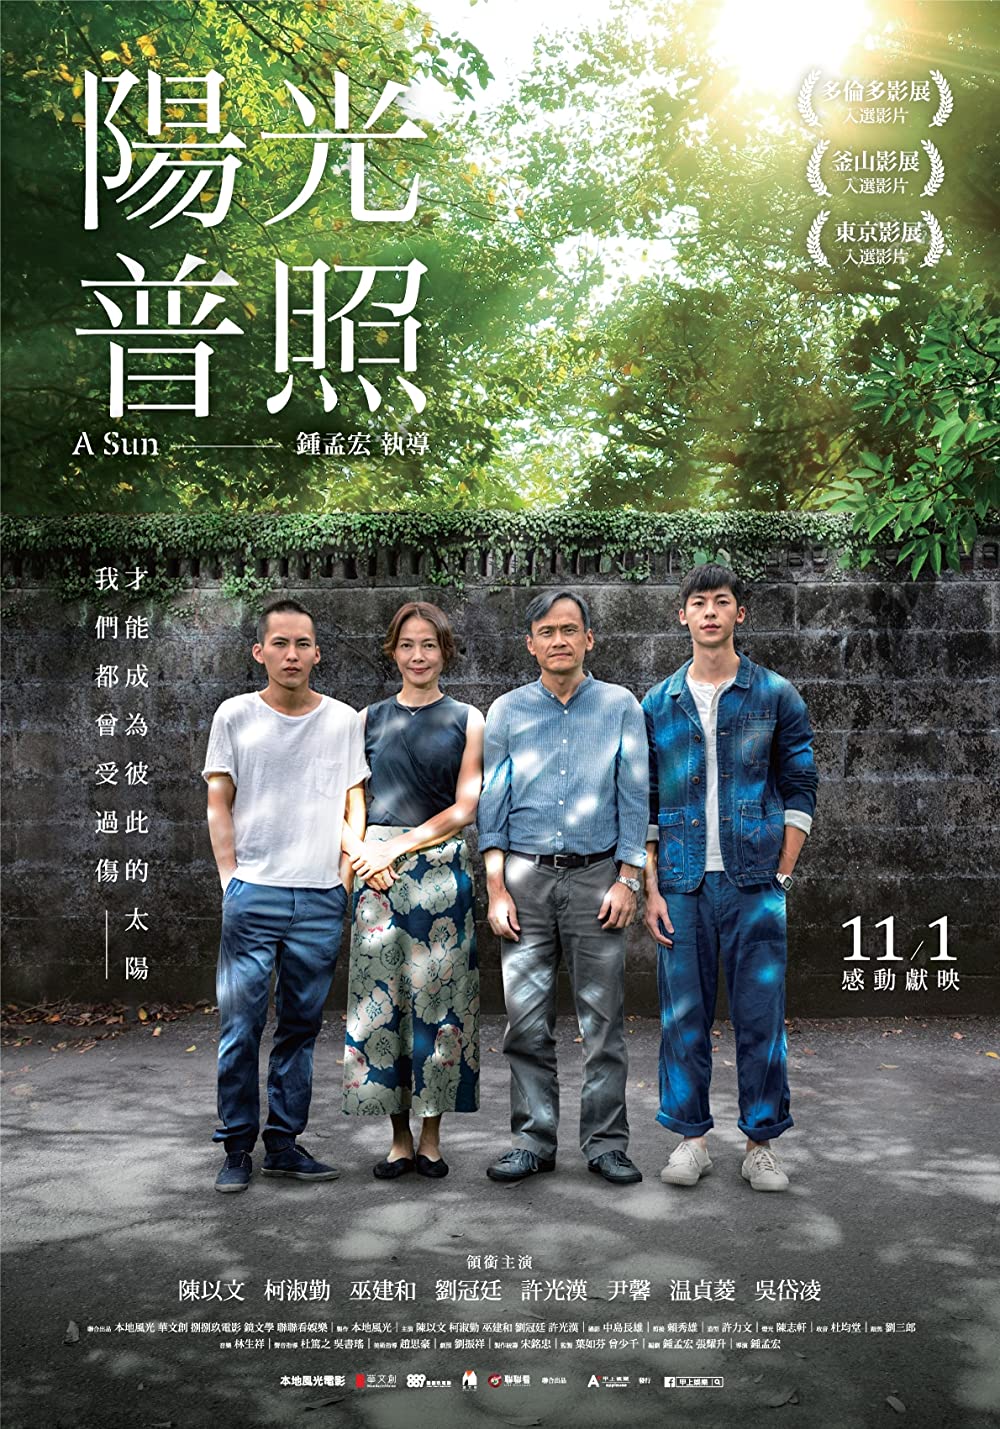 ดูหนังออนไลน์ A Sun Yangguang puzhao (2019) ชีวิตกร้านตะวัน (ซับไทย)